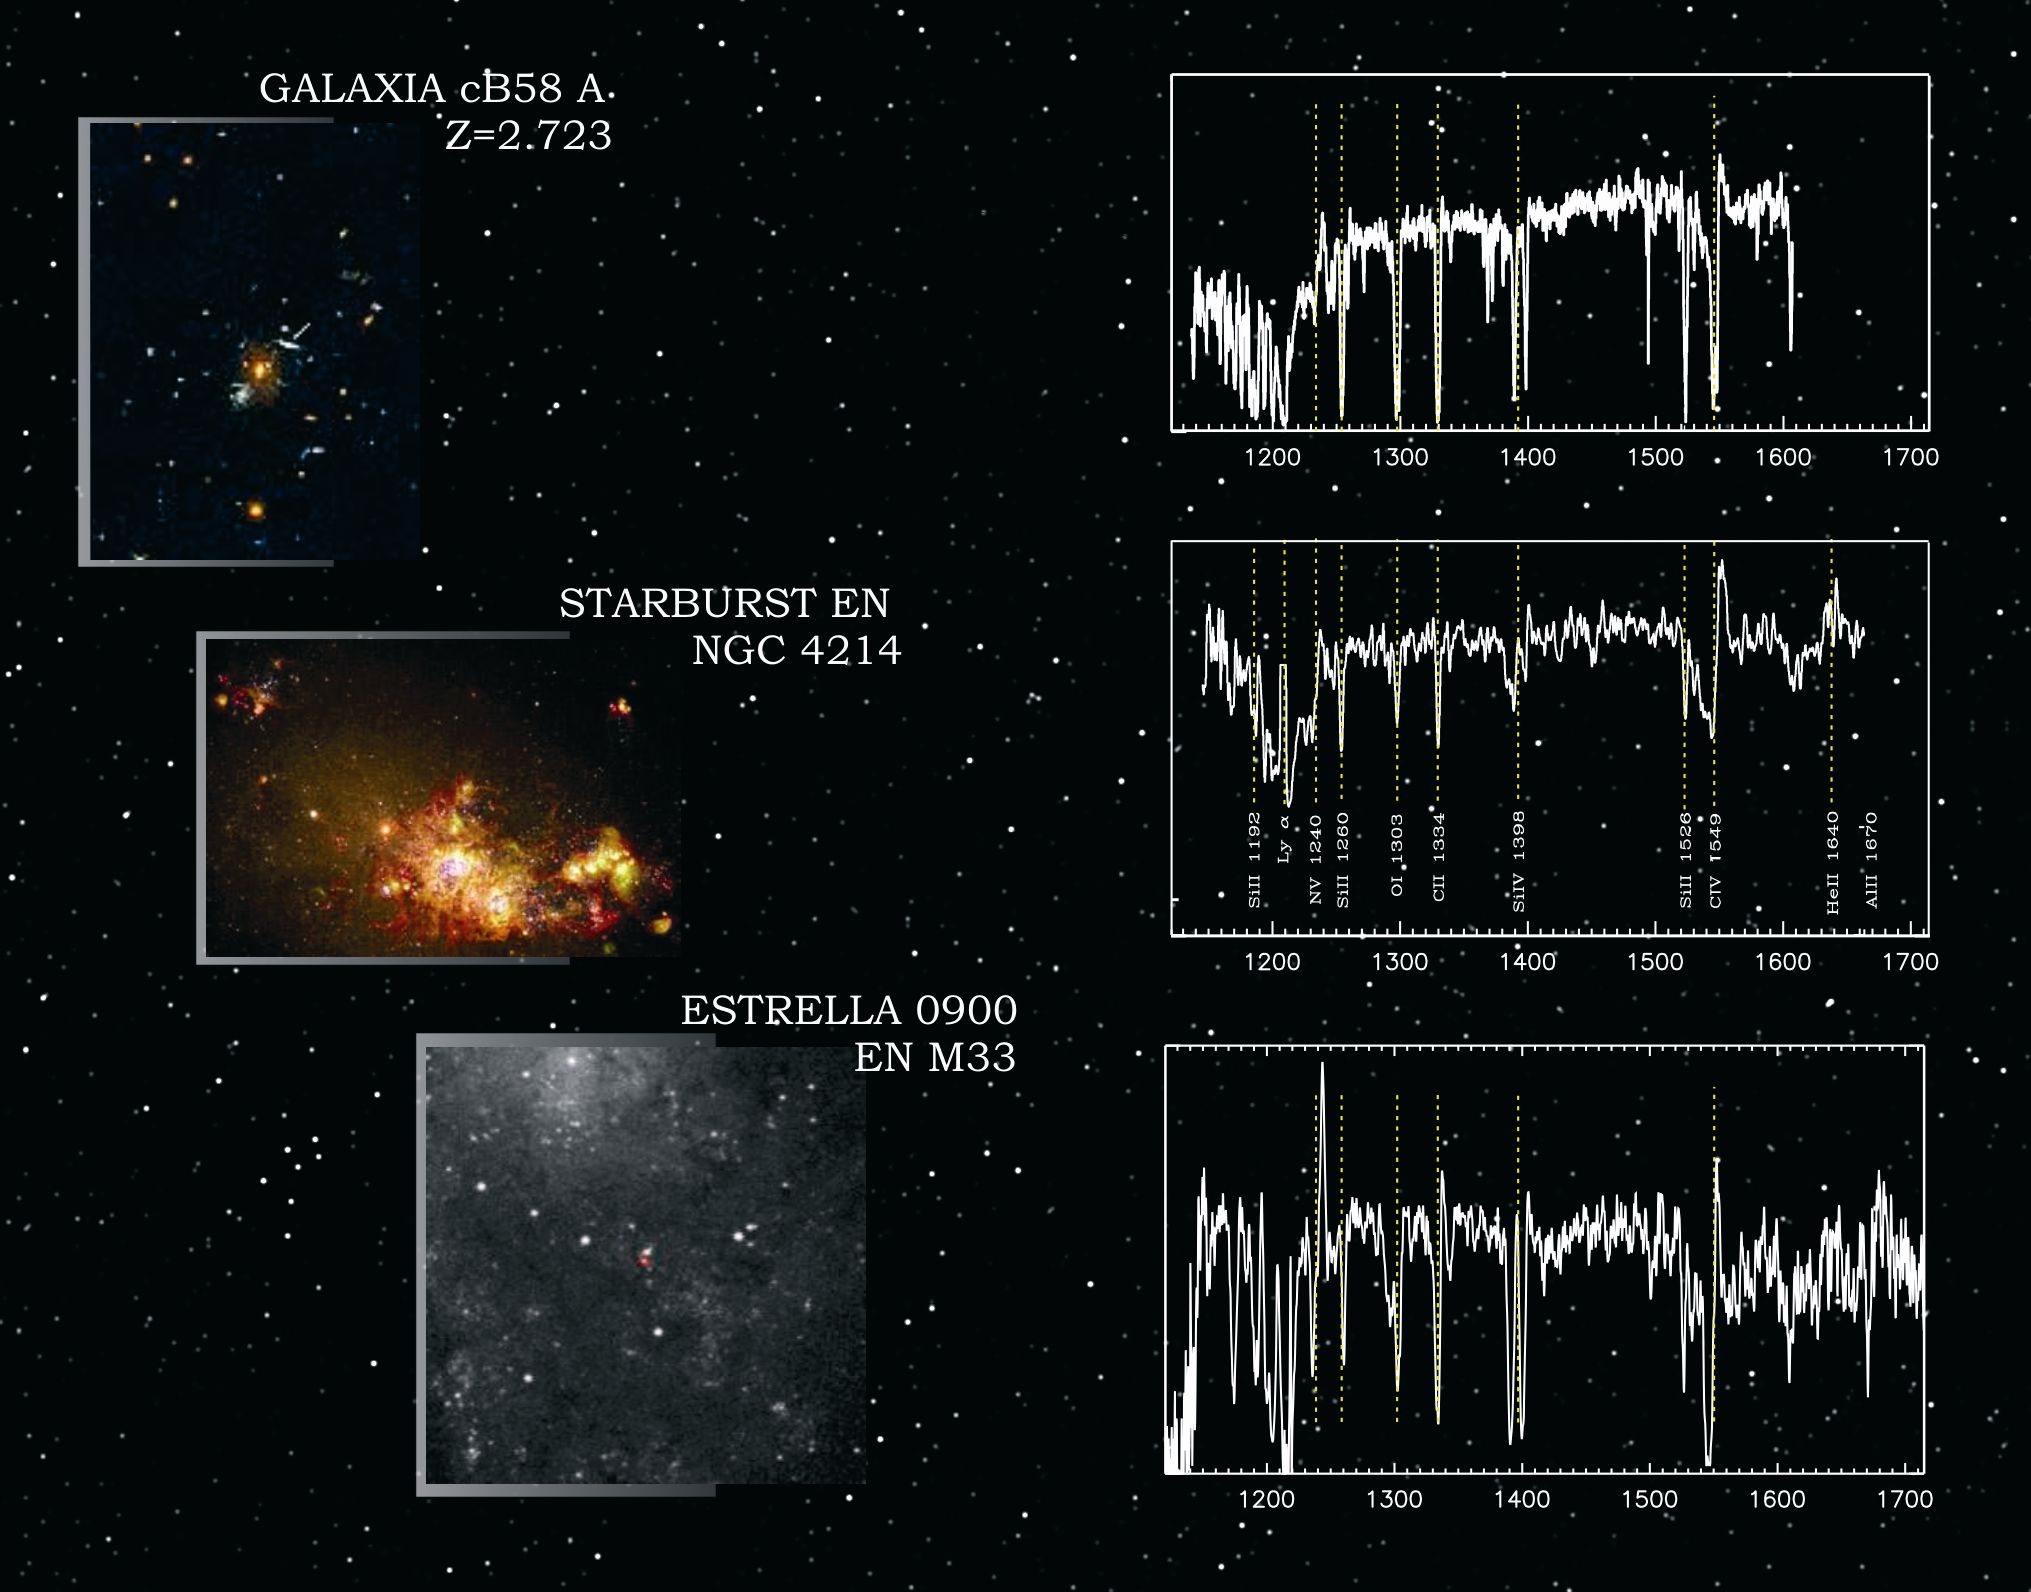 Comparación del espectro de una galaxia lejana, una galaxia cercana con formación estelar y una estrella masiva en M33. Obsérvese como los rasgos se repiten, indicando que el espectro de las galaxias está dominado por el de estrellas masivas. El espectro de la galaxia lejana fue observado en la Tierra en longitudes de onda del visible.